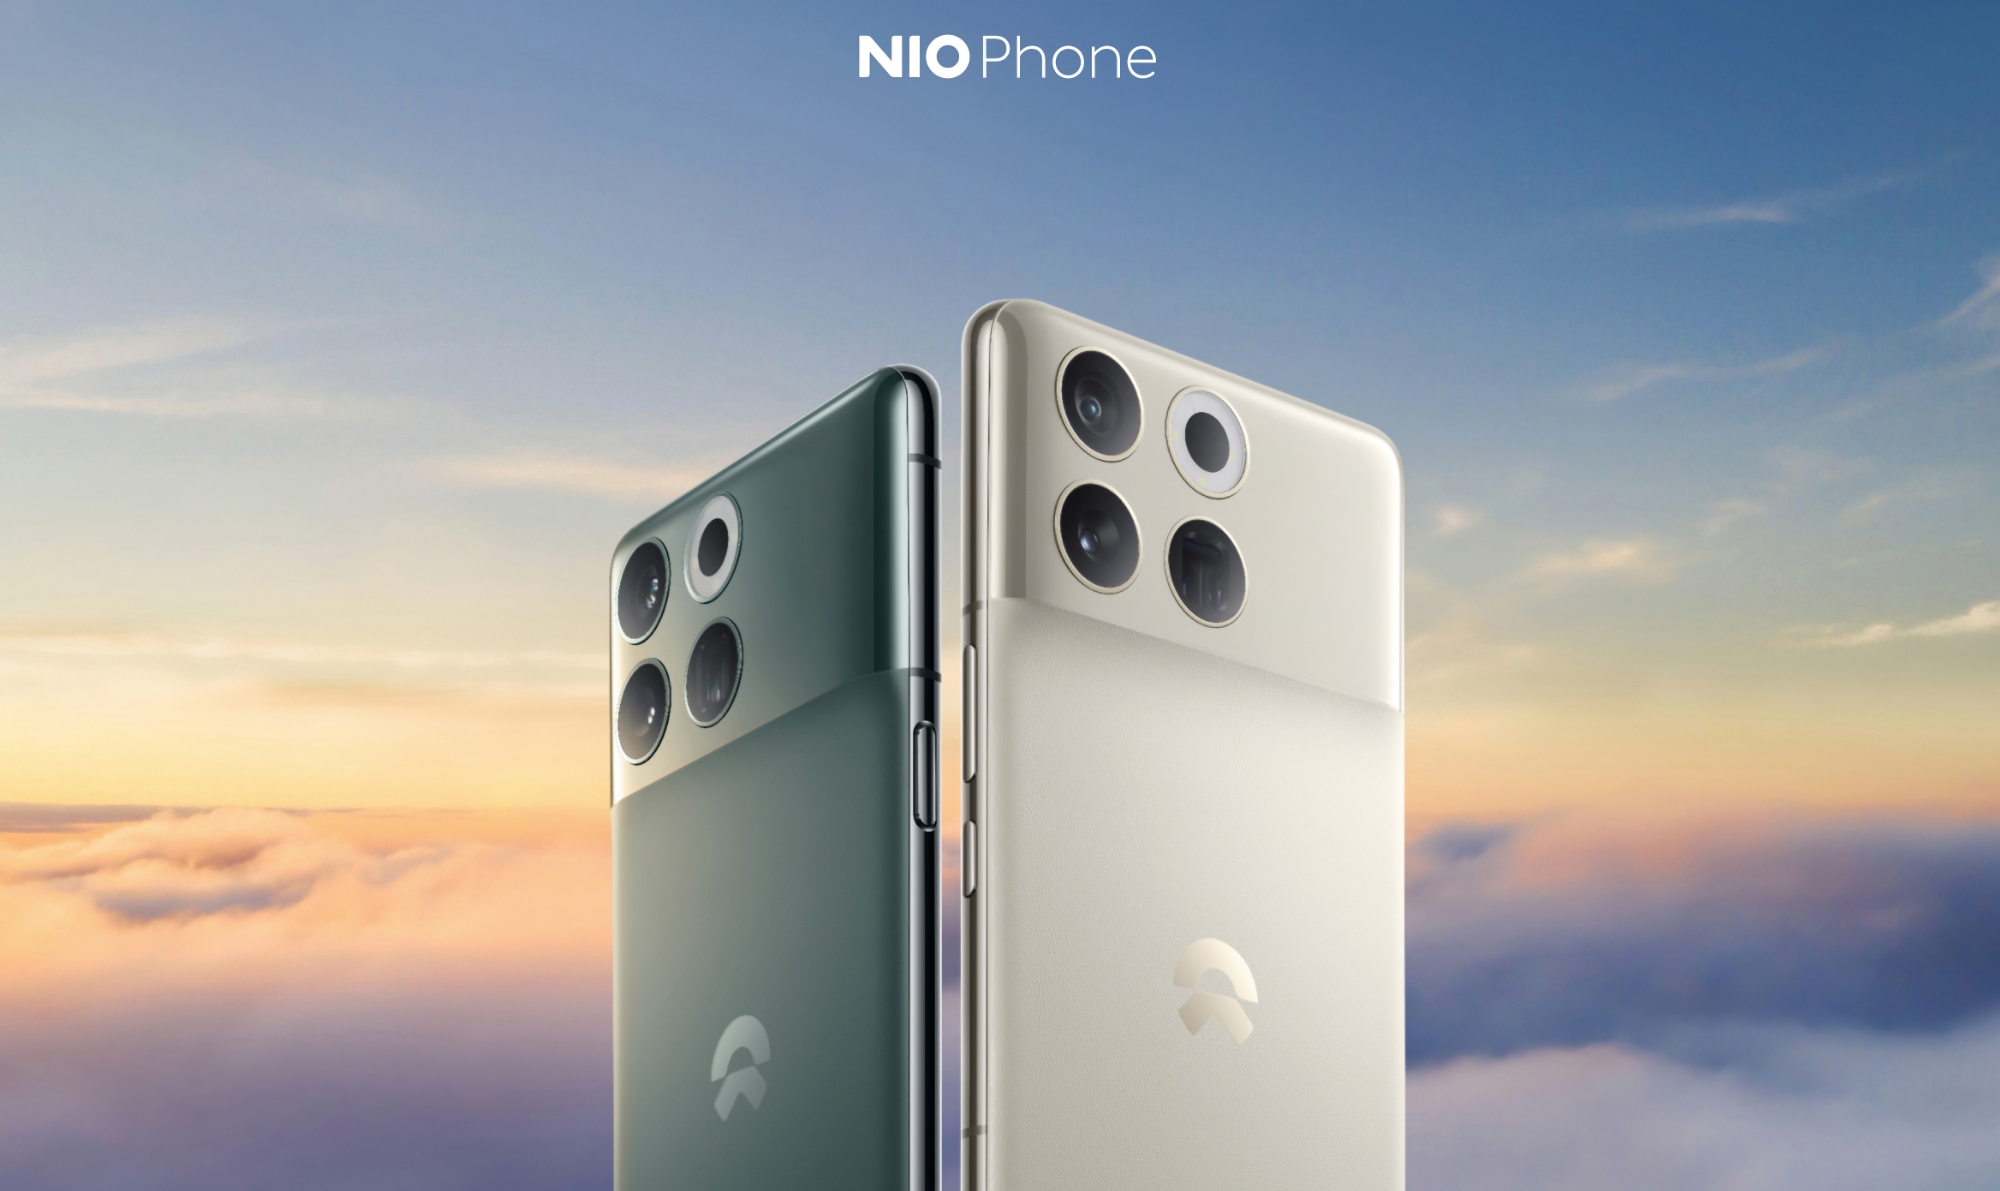 Nio zaprezentowało swój pierwszy smartfon z ekranem LTPO OLED 120 Hz, układem Snapdragon 8 Gen 2, aparatem Sony i integracją z pojazdami elektrycznymi.